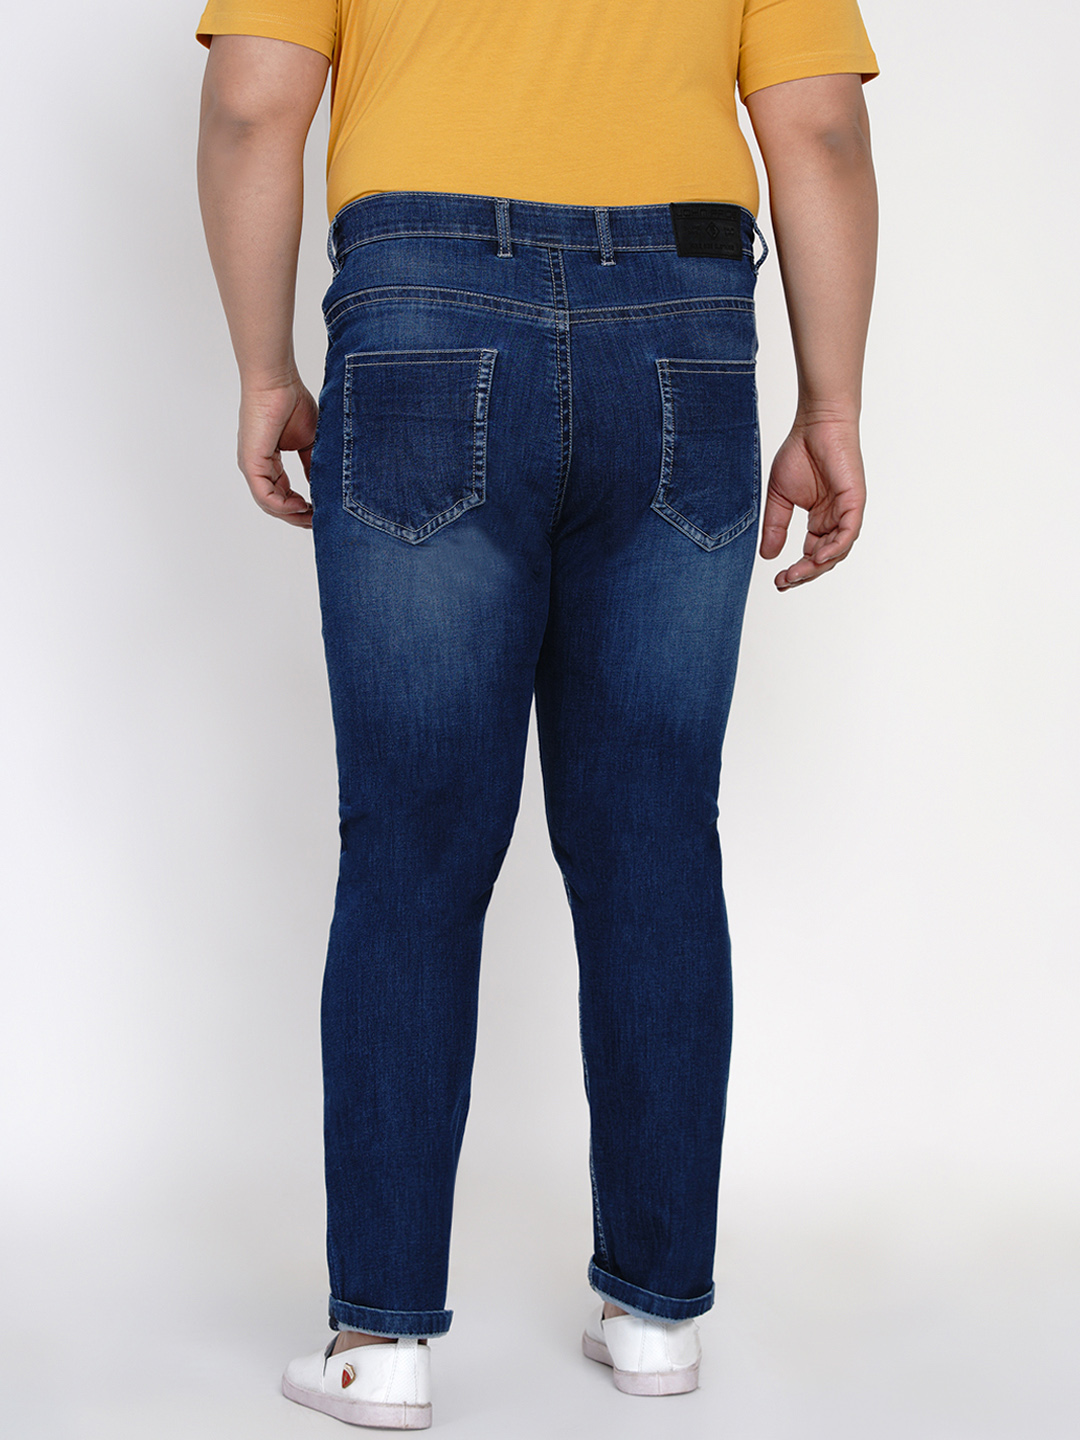 bottomwear/jeans/JPJ12118/jpj12118-5.jpg